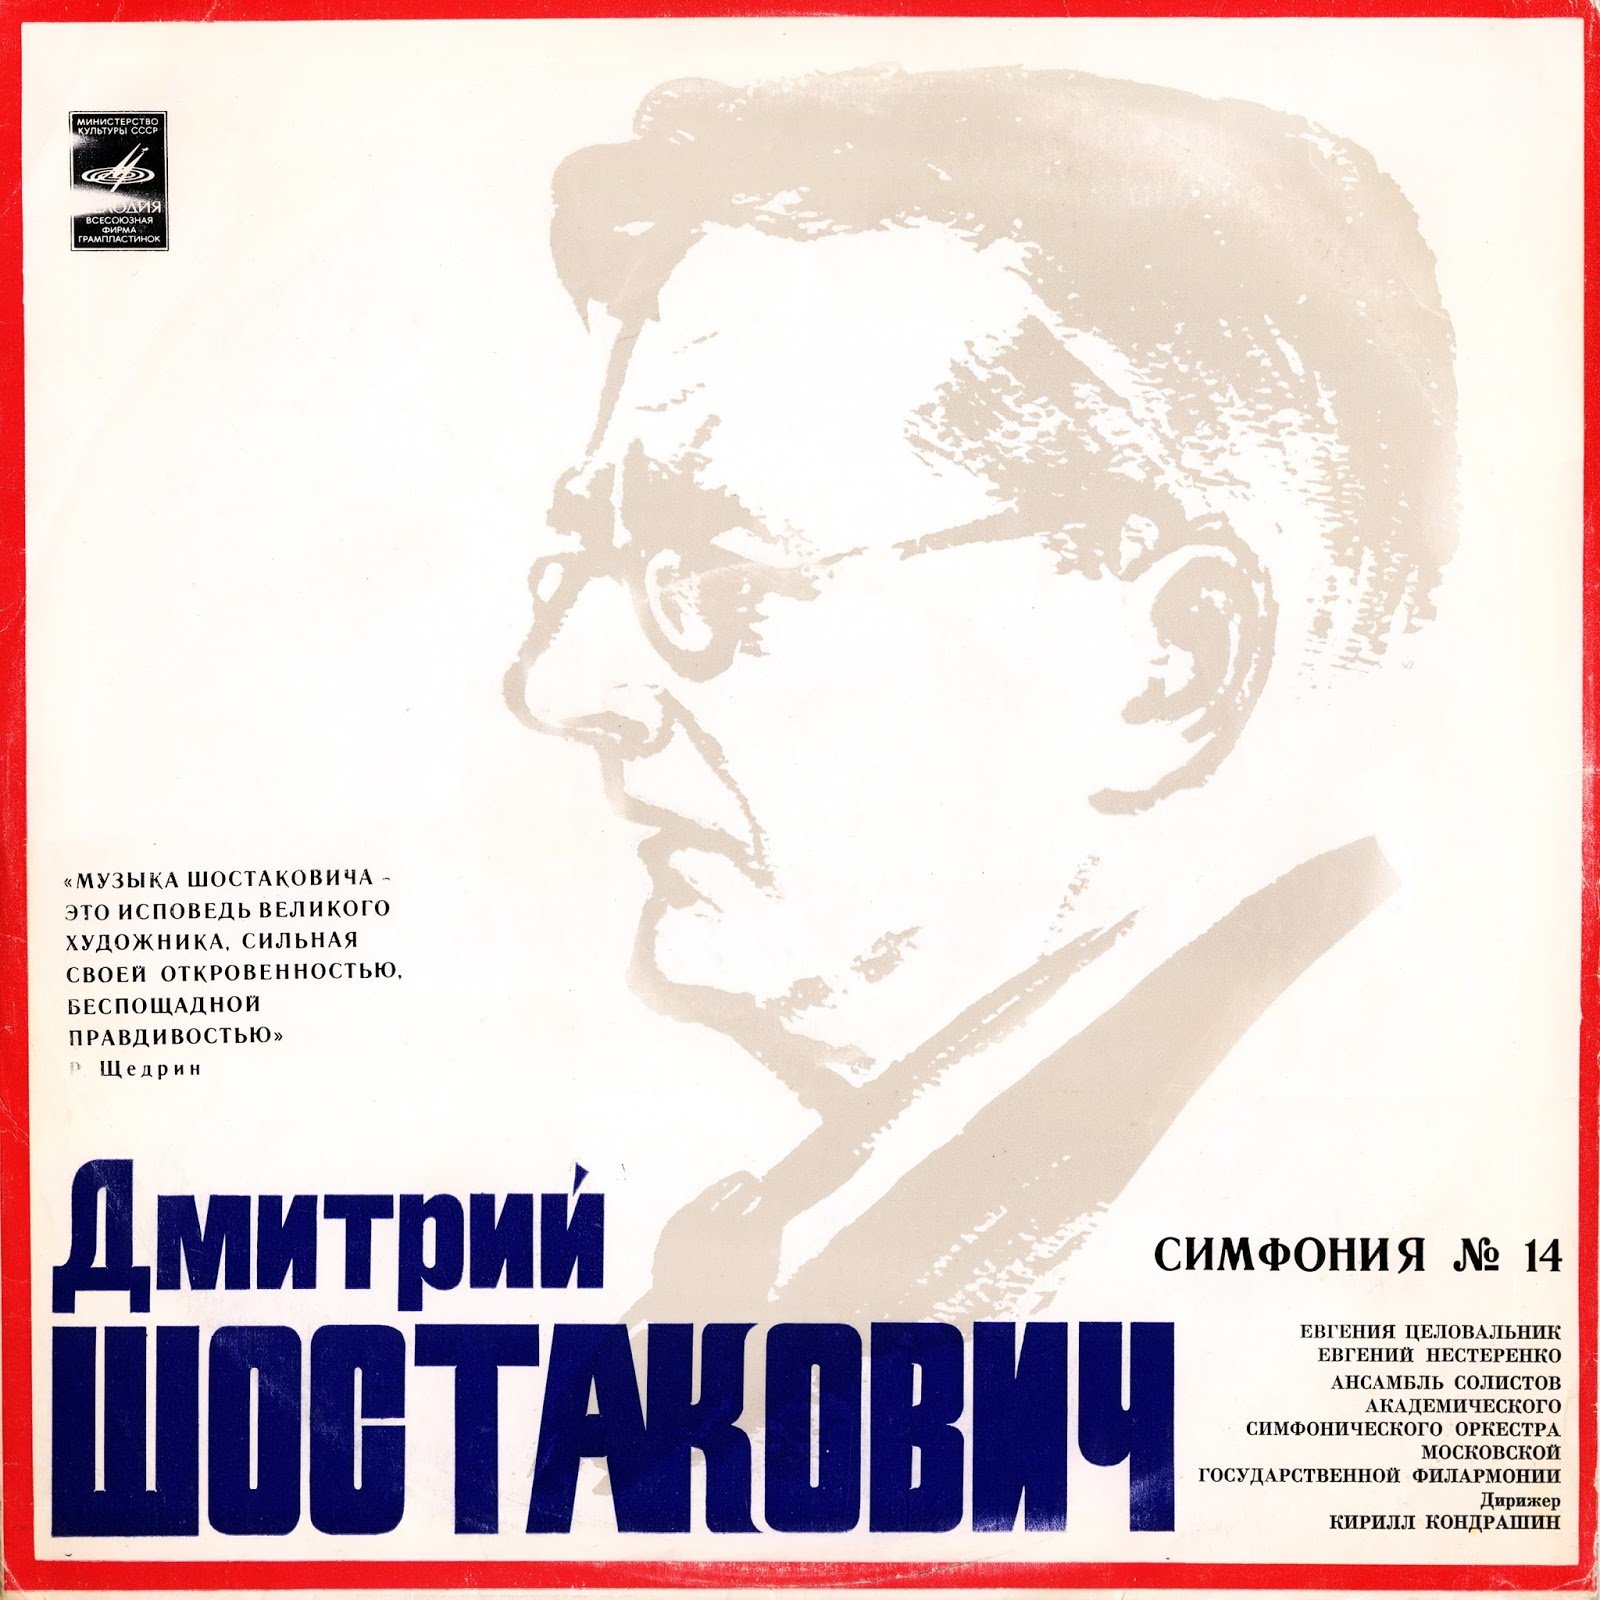 Произведения для фортепиано шостаковича. 9 Симфония Шостаковича обложка.